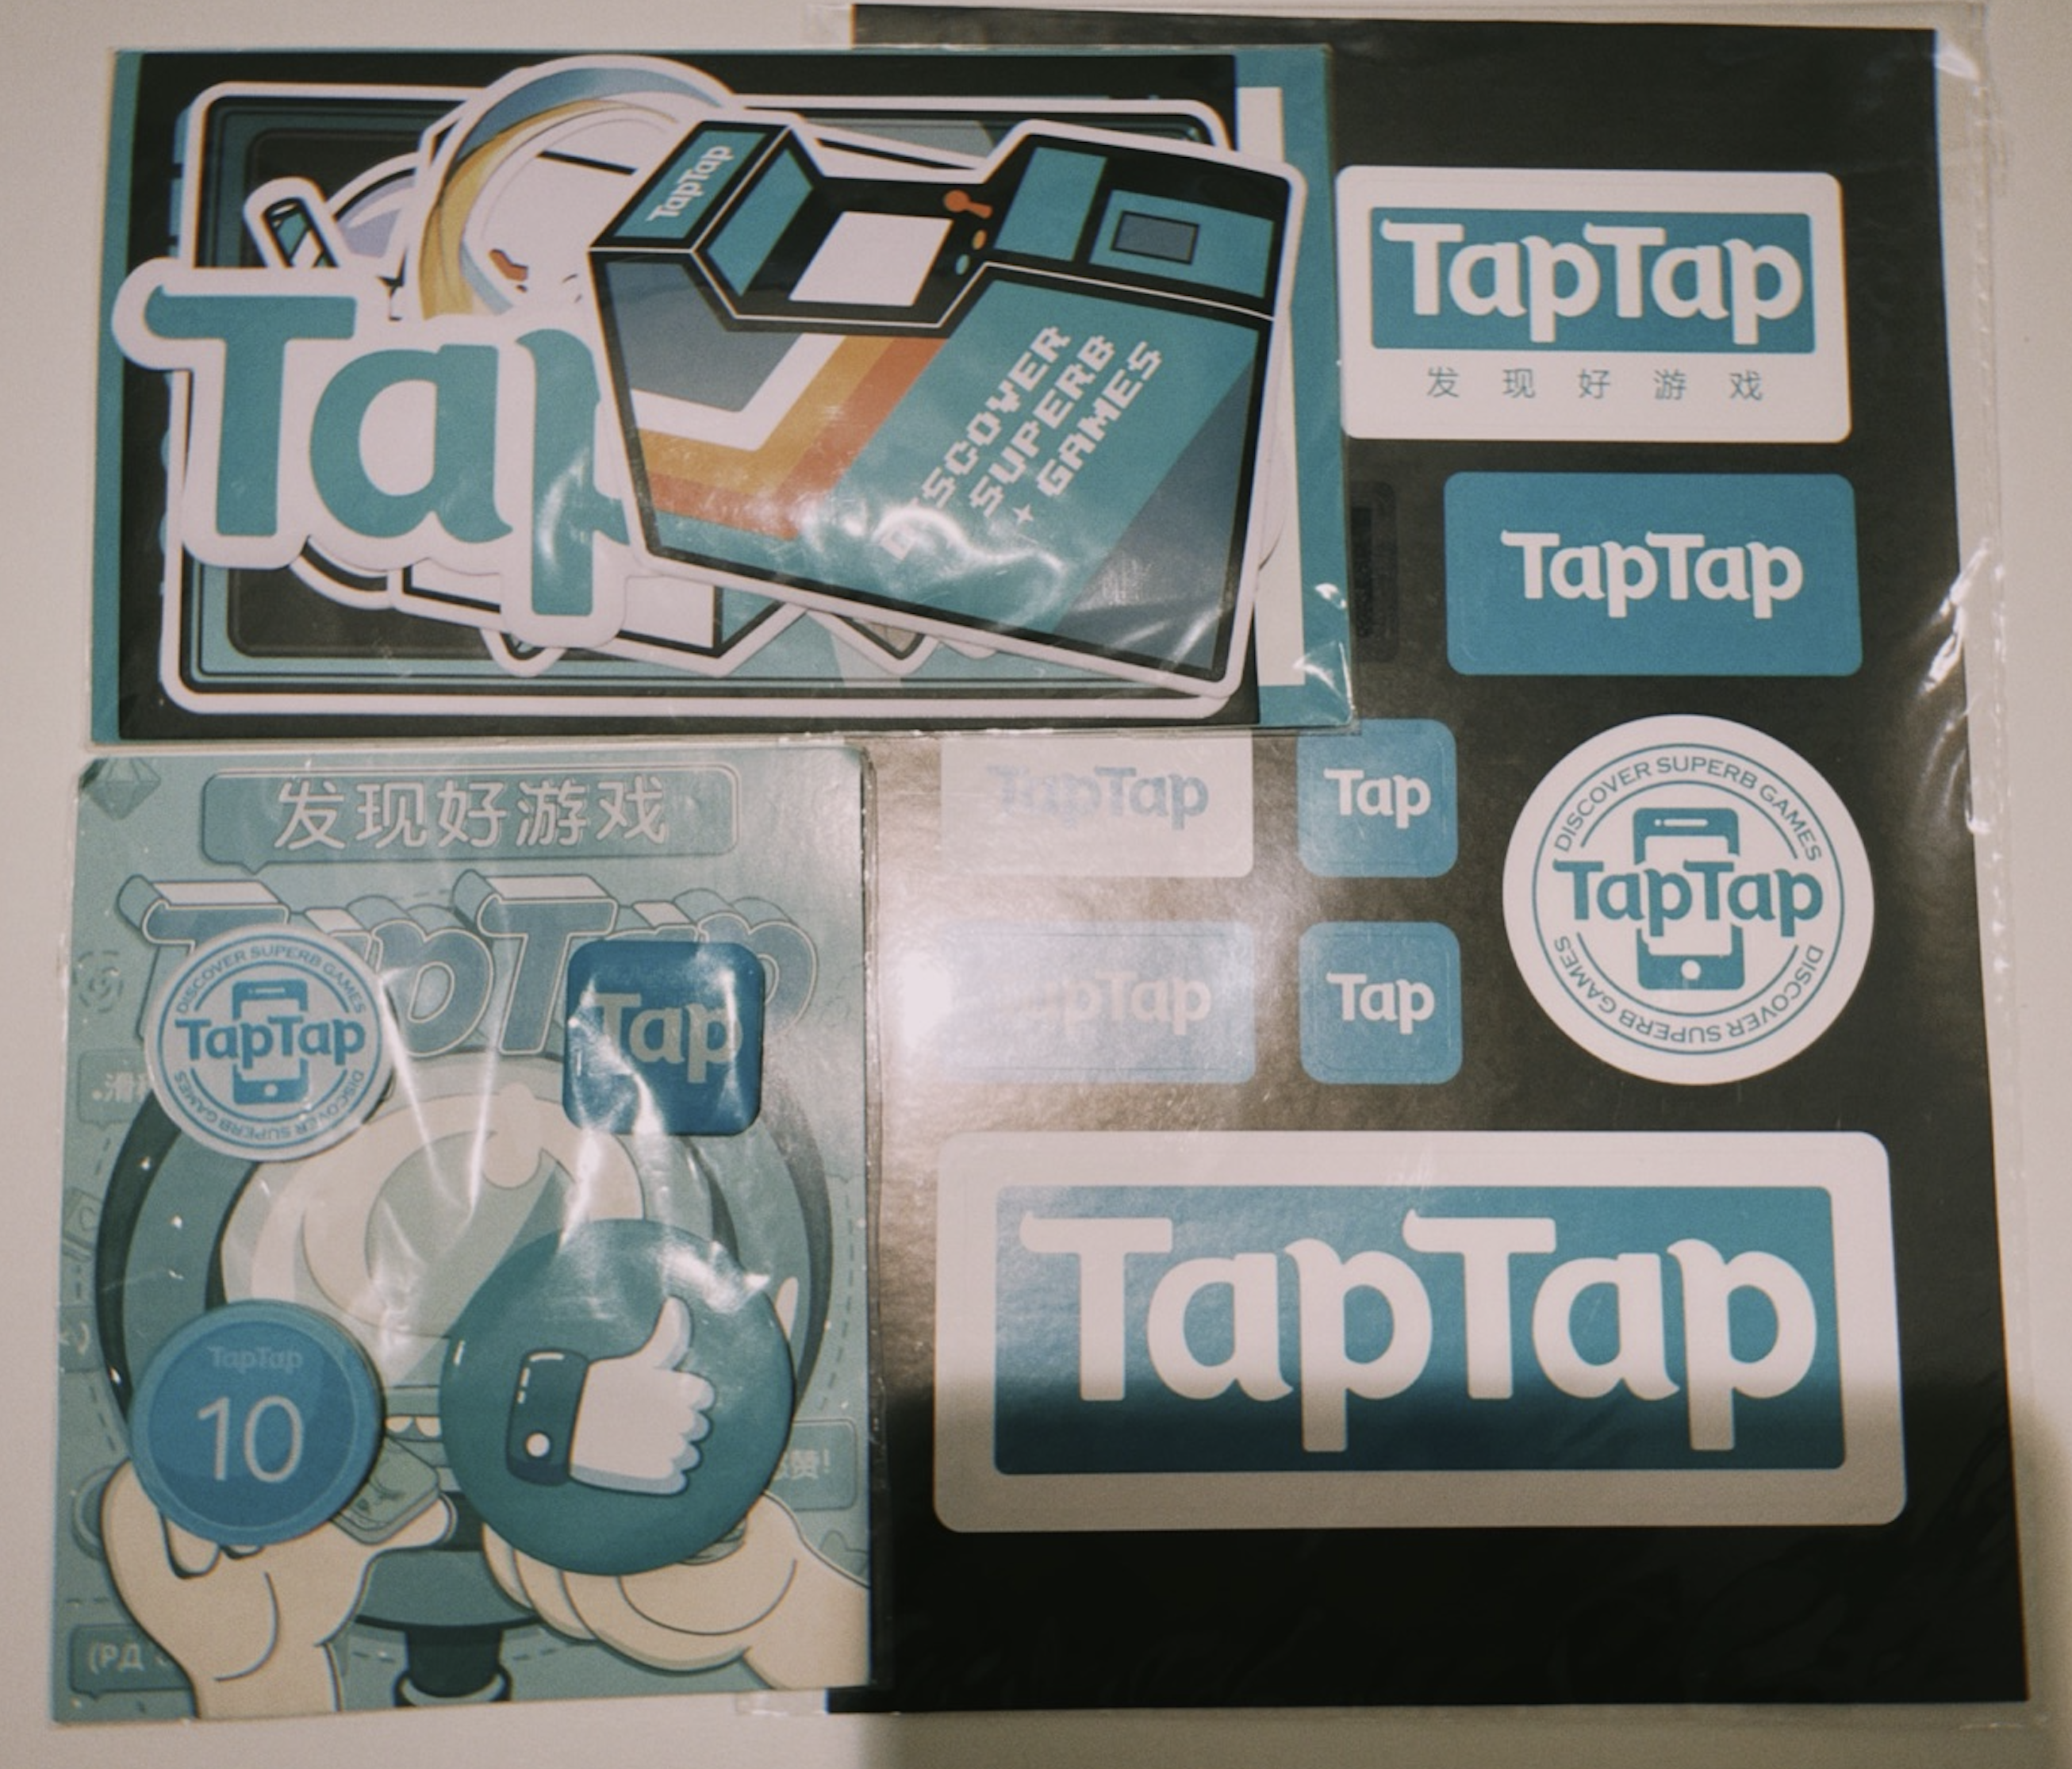 与TapTap活动君分享你的厕“锁”囧事 赢精美周边礼品